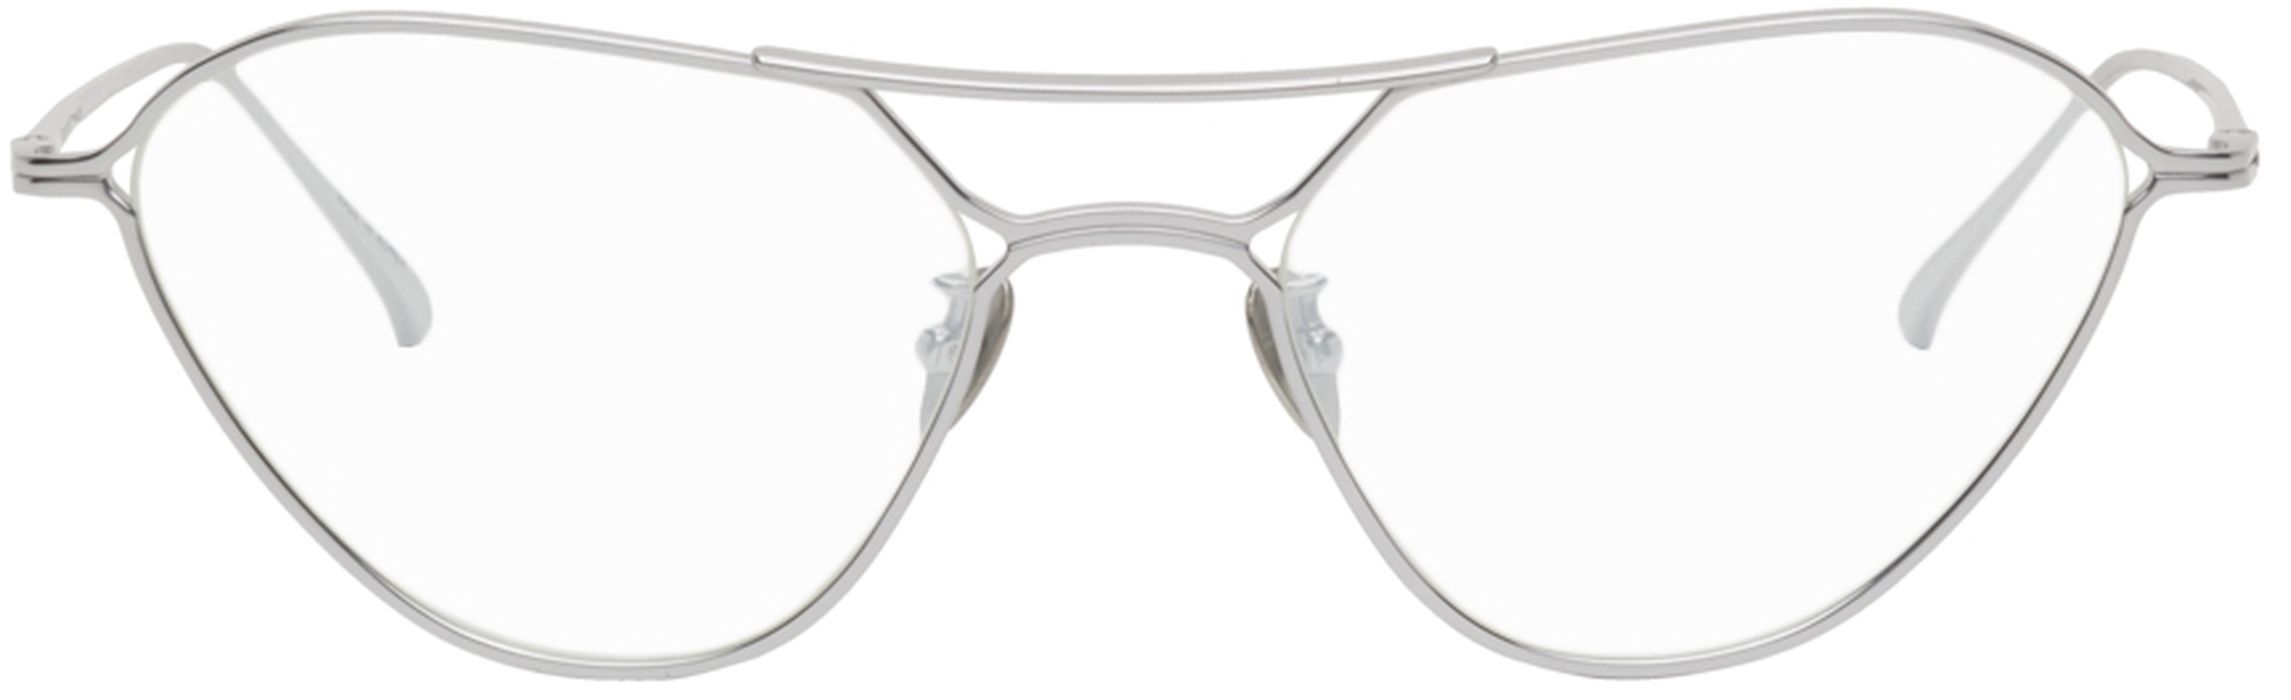 PROJEKT PRODUKT Silver GE-CC6 Glasses